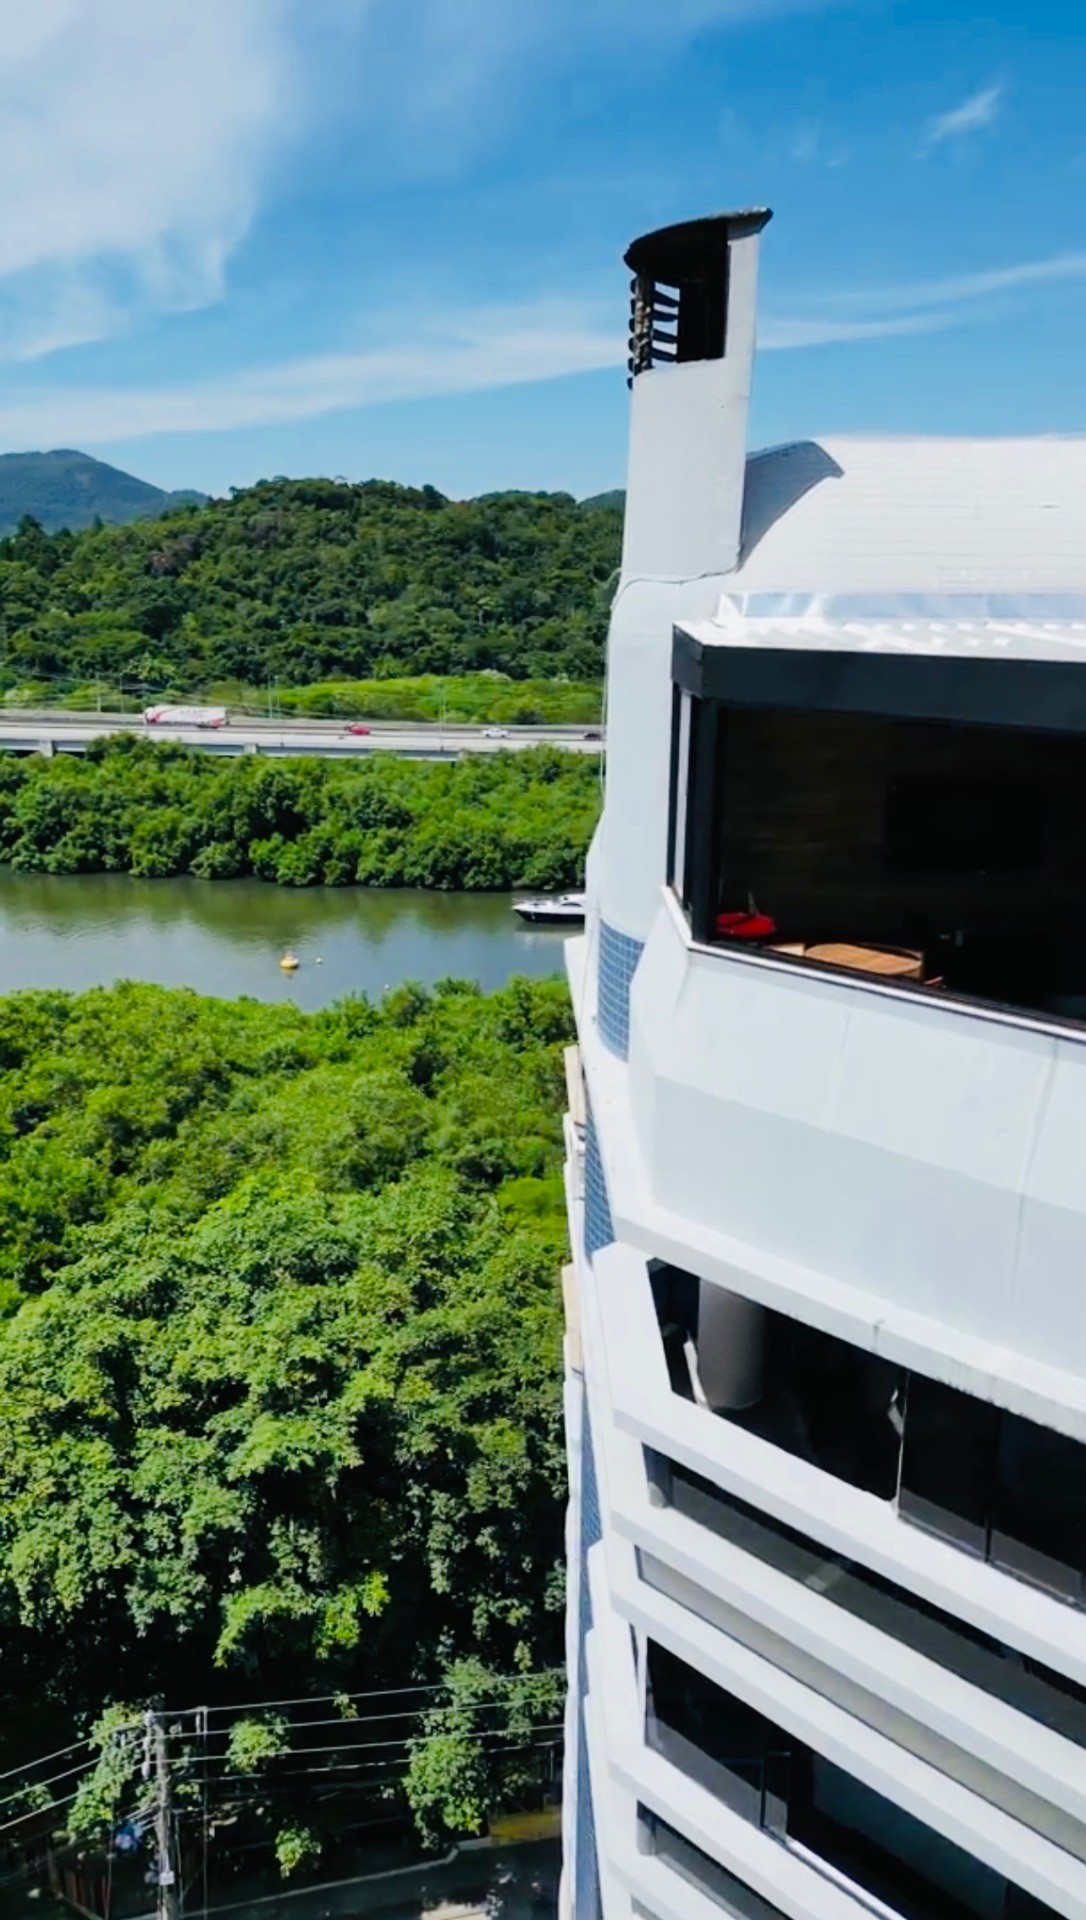 Cobertura tríplex com 343m², privativos, muito bem distribuídos, mobiliada, equipada e decorada, um dos pontos positivos, vista para o mar e para rio Camboriú, sendo o canal principal de acesso das marinas de Balneário Camboriú.